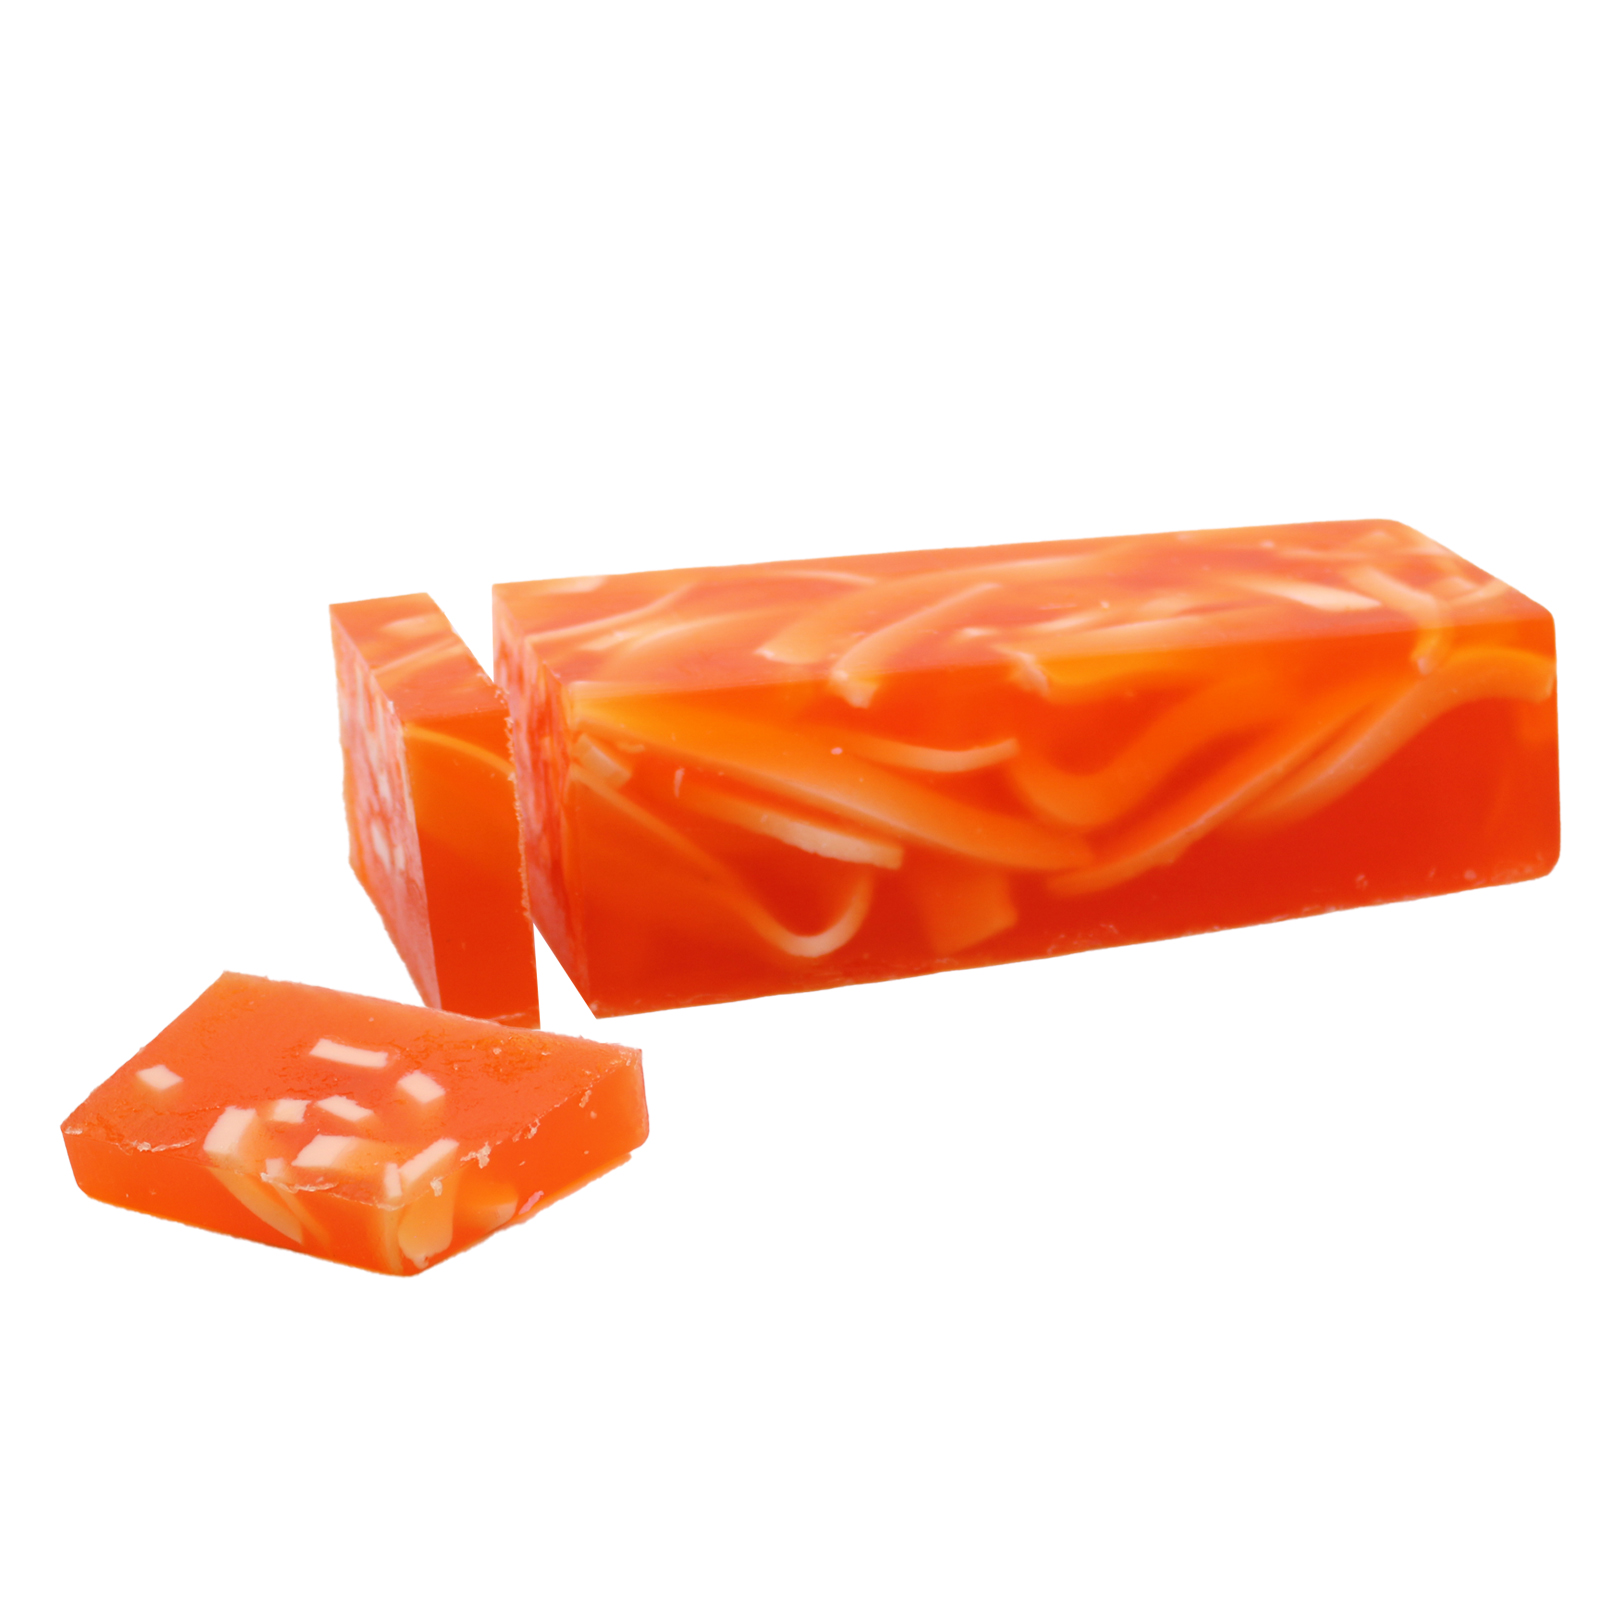 Orange Zest - Soap Loaf